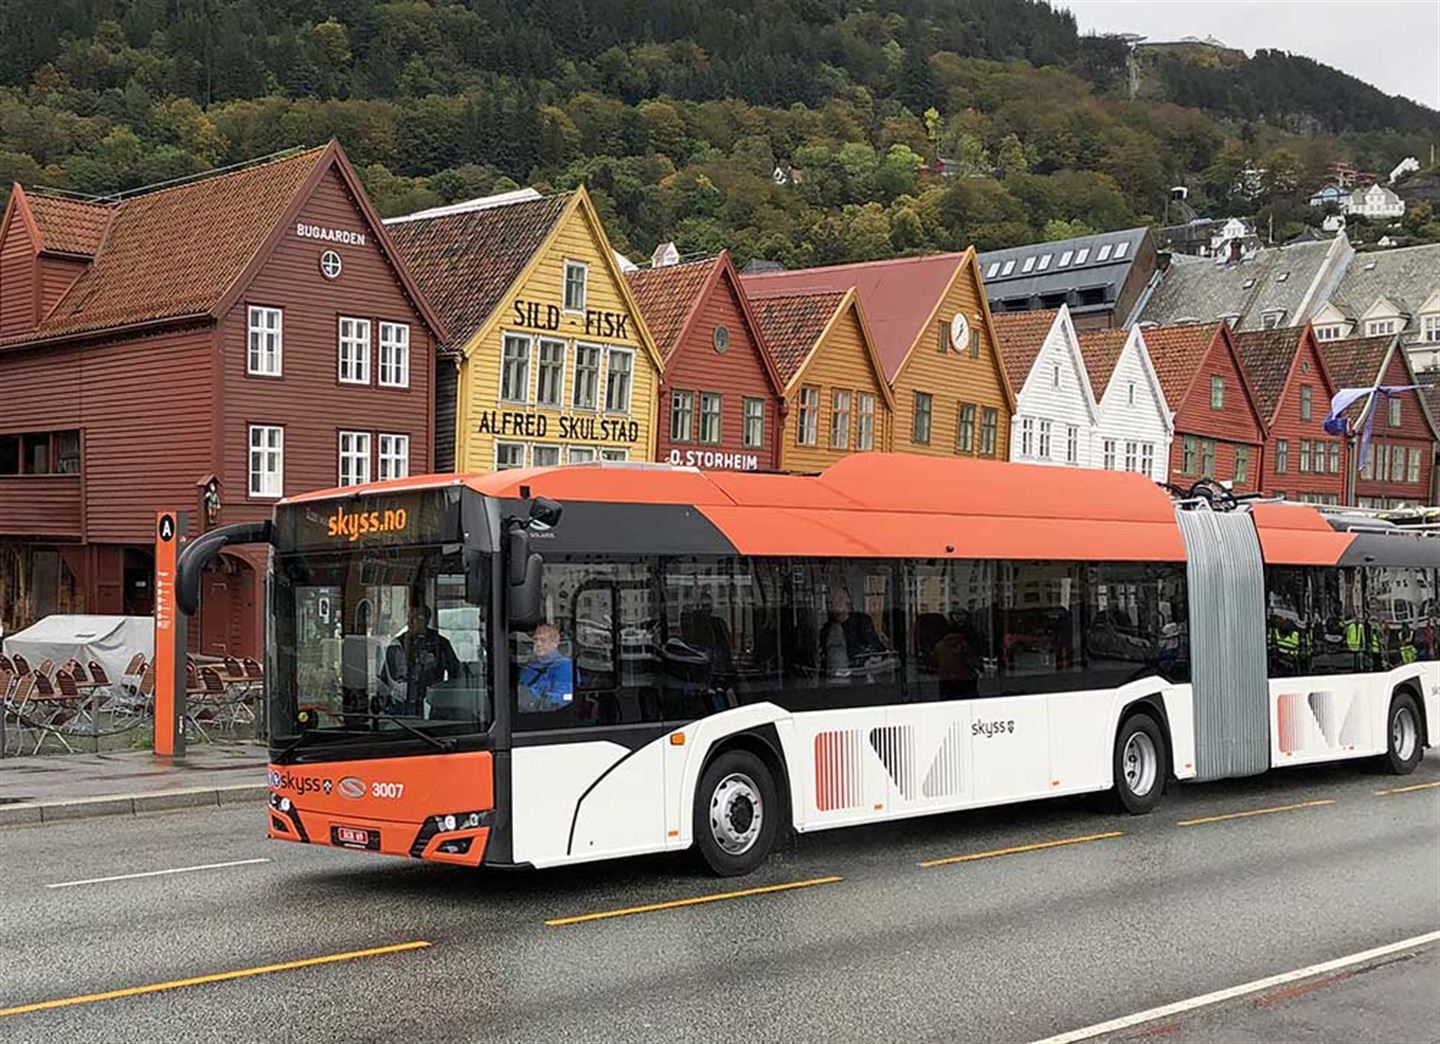 FØRSTE GONG I NOREG: På prøvetur over Bryggen, ein flunkande ny trolleybuss som kan køyre kvar som helst fordi den går både på straum frå køyreleidning og oppladbare batteri.